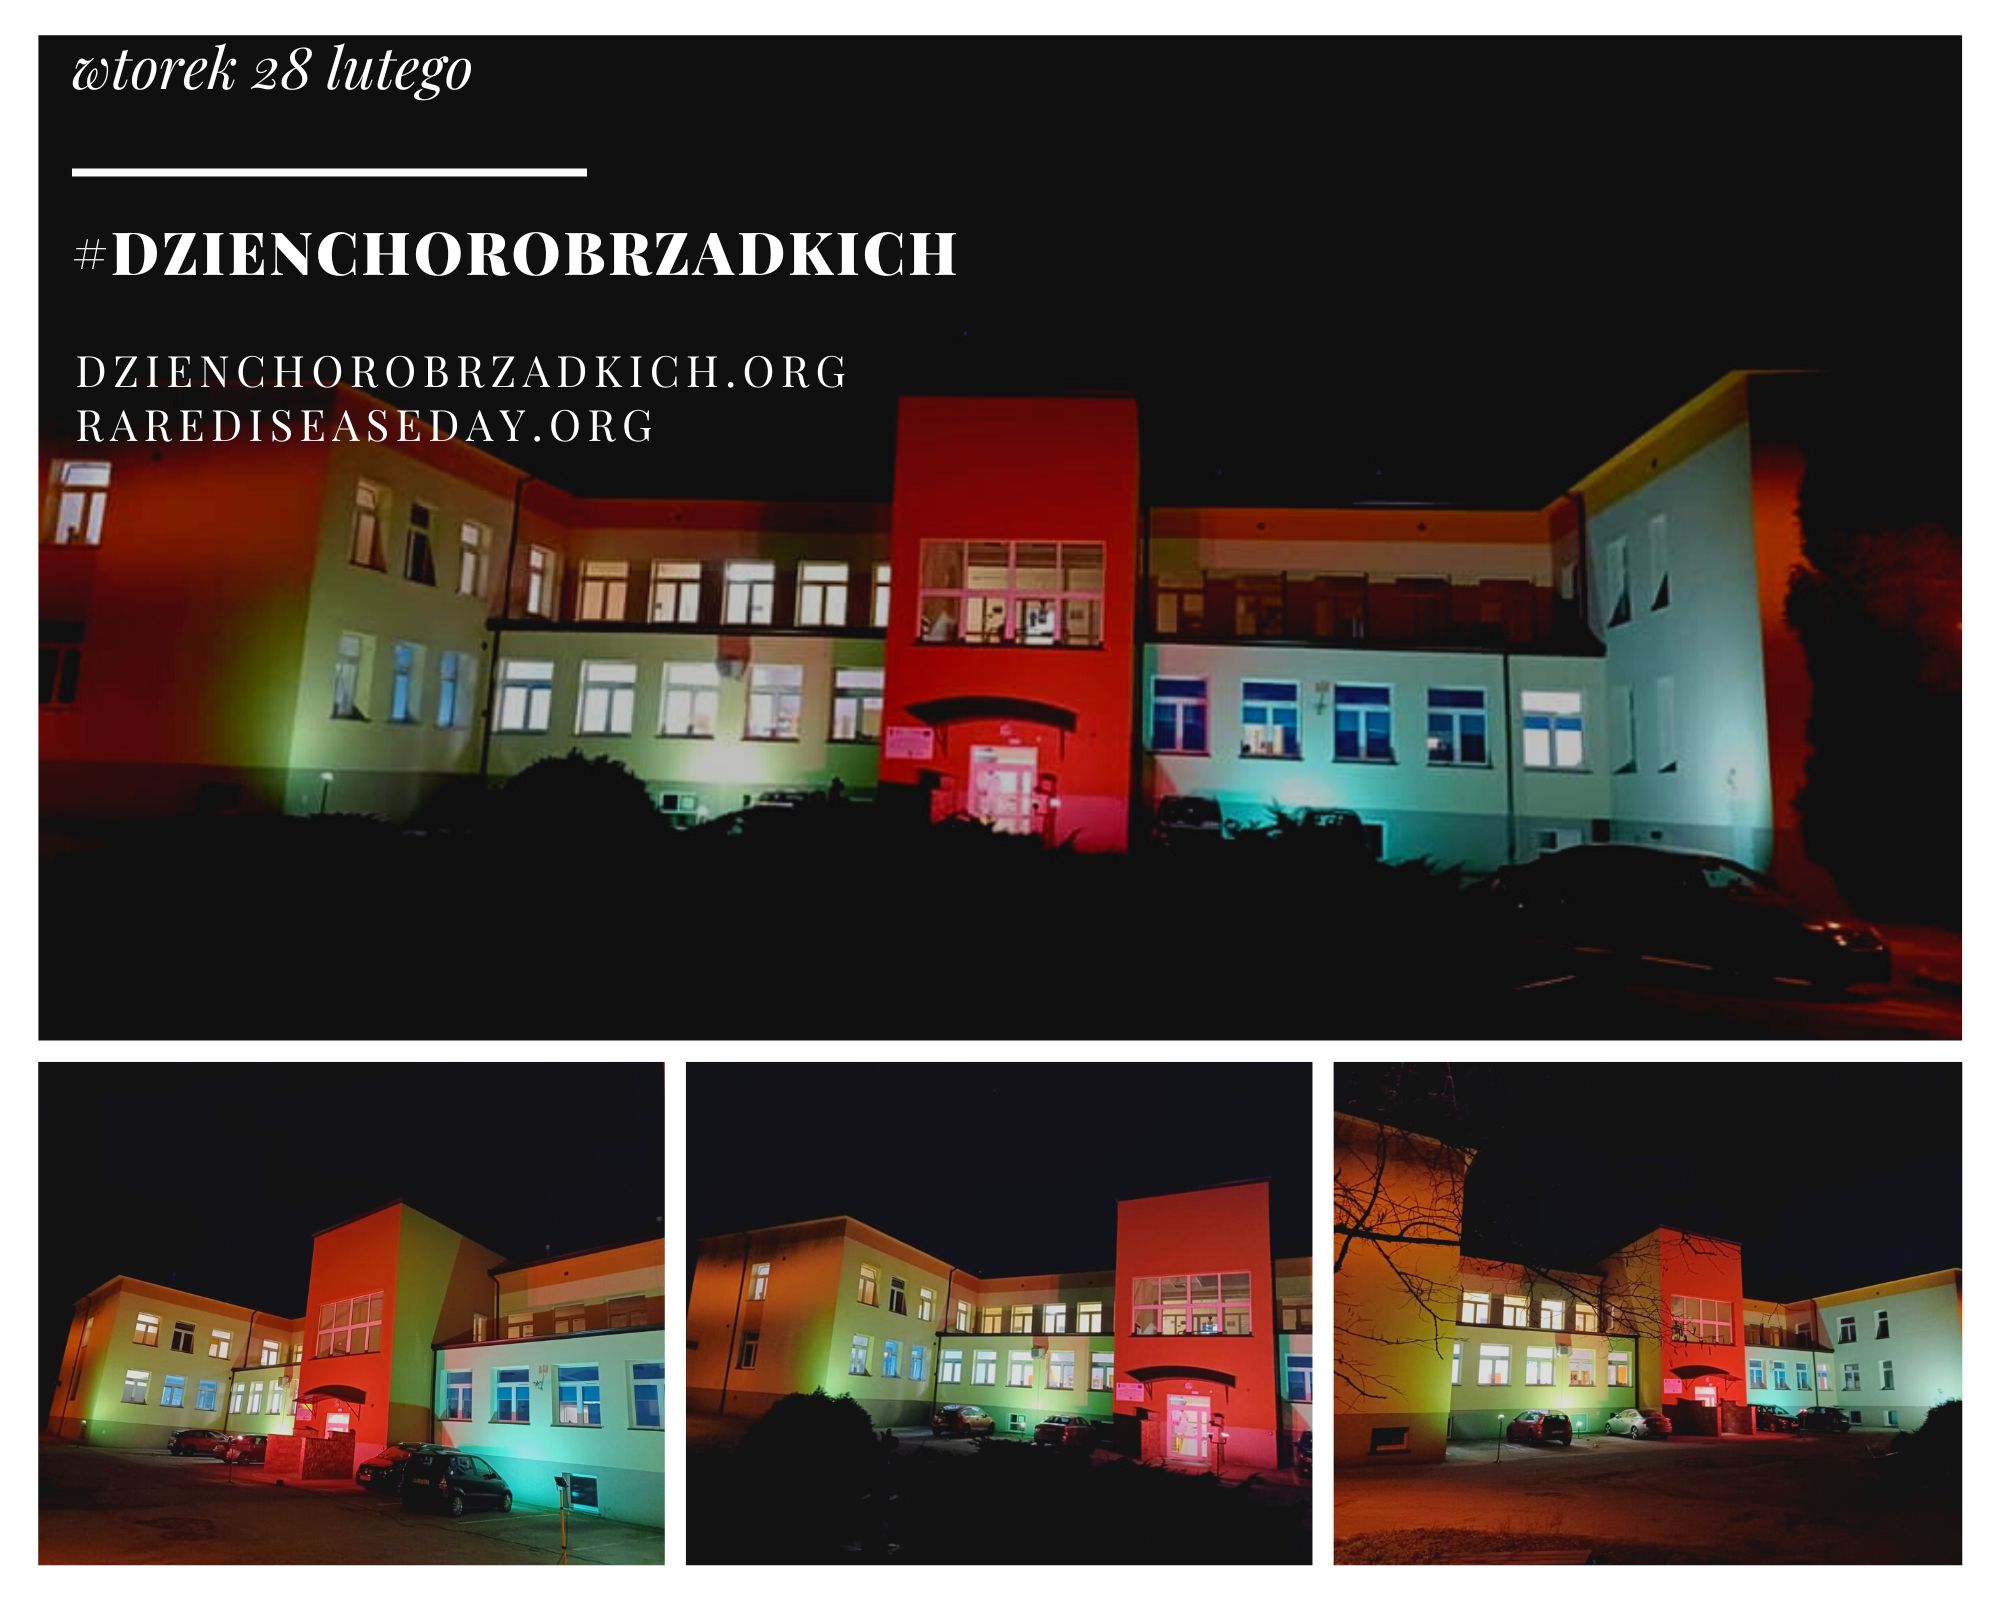 elewacja budynku szpitala podświetlona na zielono i czerwono z okazji dnia chorób rzadkich